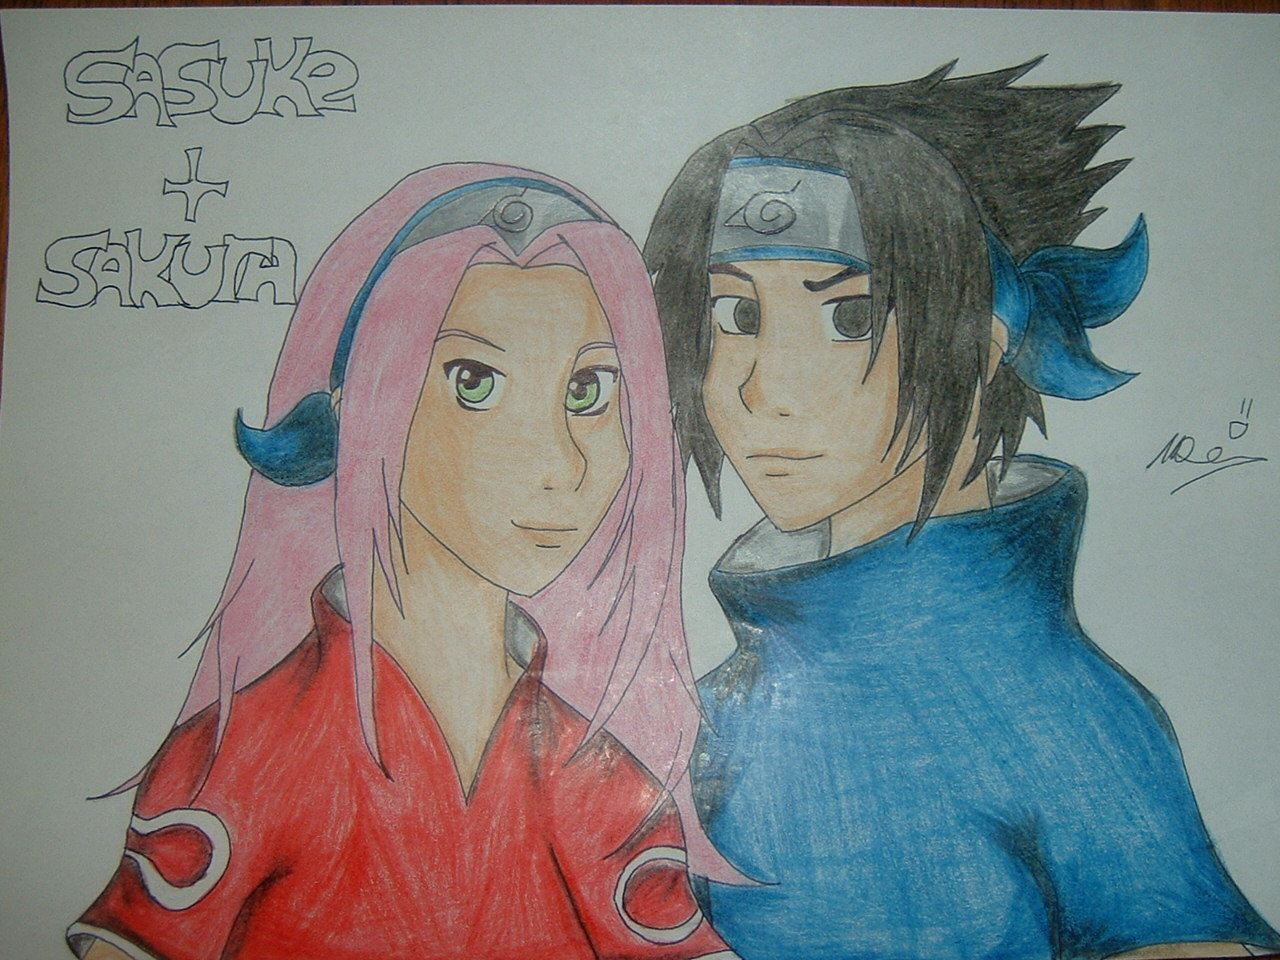 Sasuke and sakura by little_romy_fan